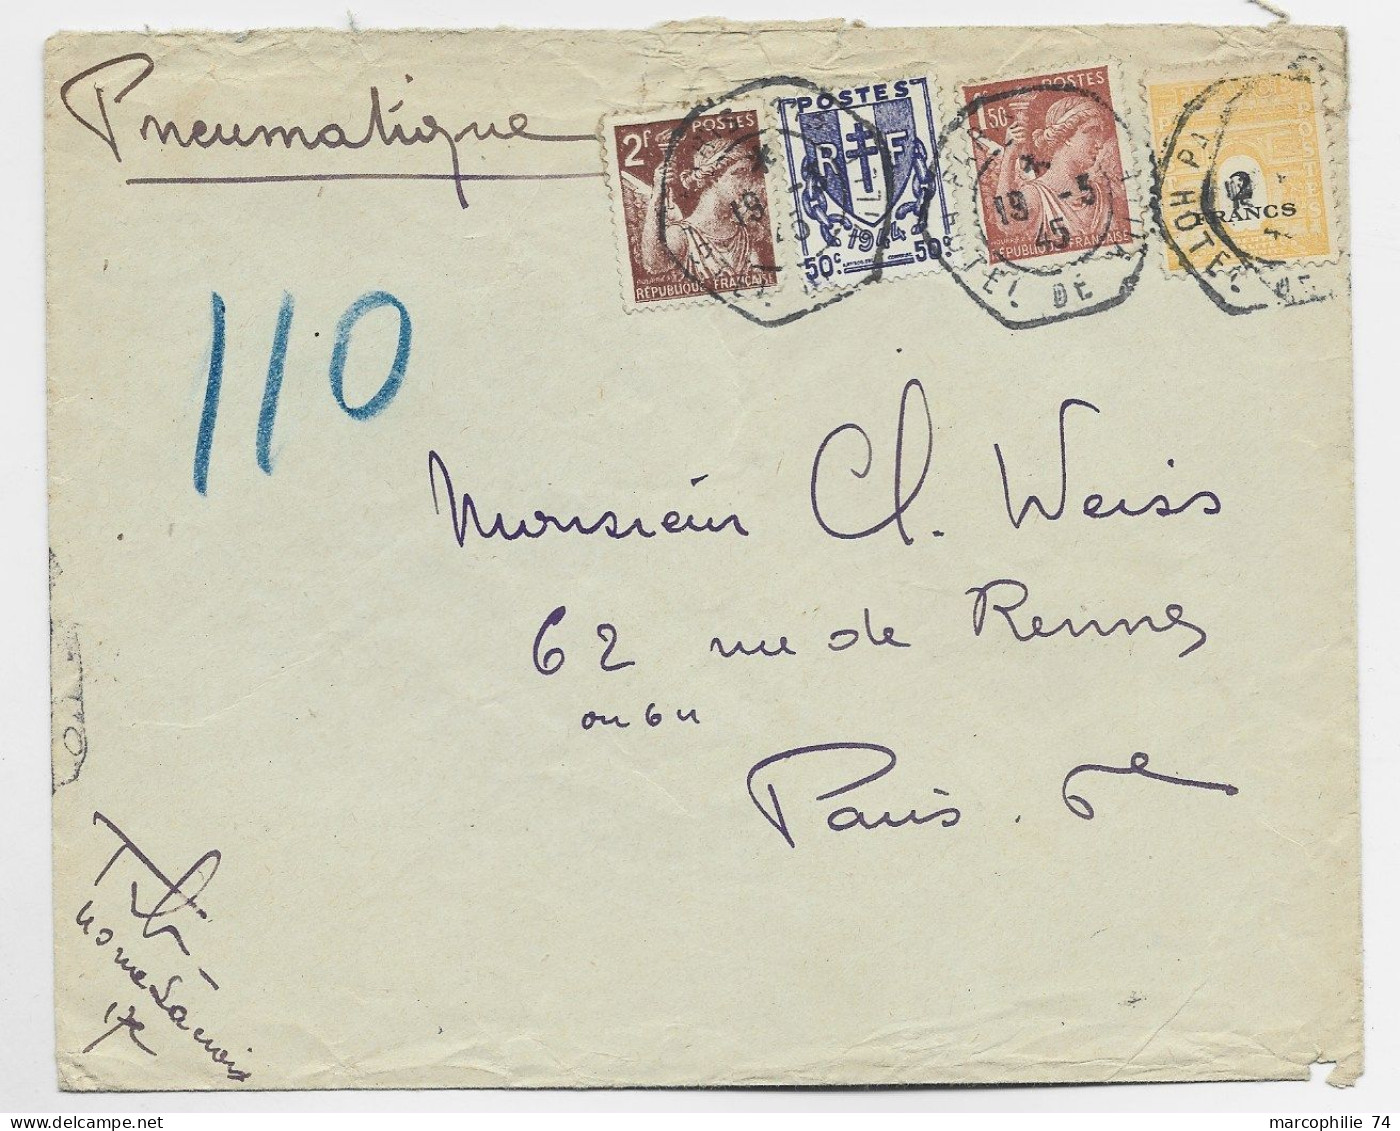 FRANCE ARC TRIOMPHE 2FR+ CHAINE 50C + 2FR+1FR50  PNEUMATIQUE C. HEX PARIS 19.3.1945 HOTEL DE VILLE AU TARIF - 1944-45 Arco Del Triunfo